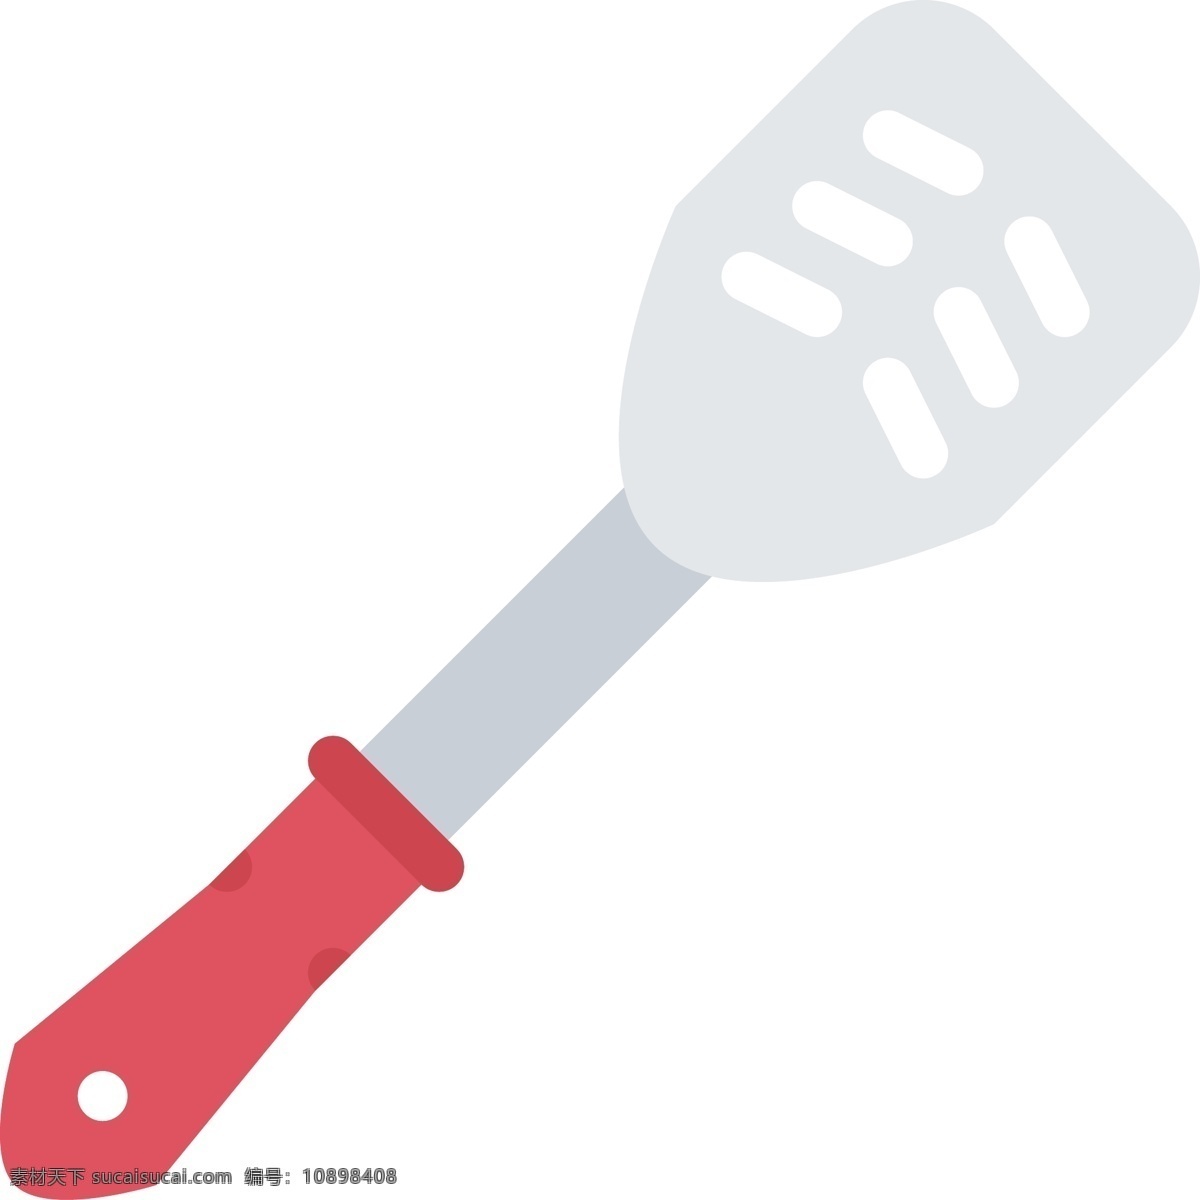 灰色 铲子 免 抠 图 厨房用品 炒菜的铲子 ui应用图标 网页图标 电脑图标 卡通图案 卡通插画 免抠图